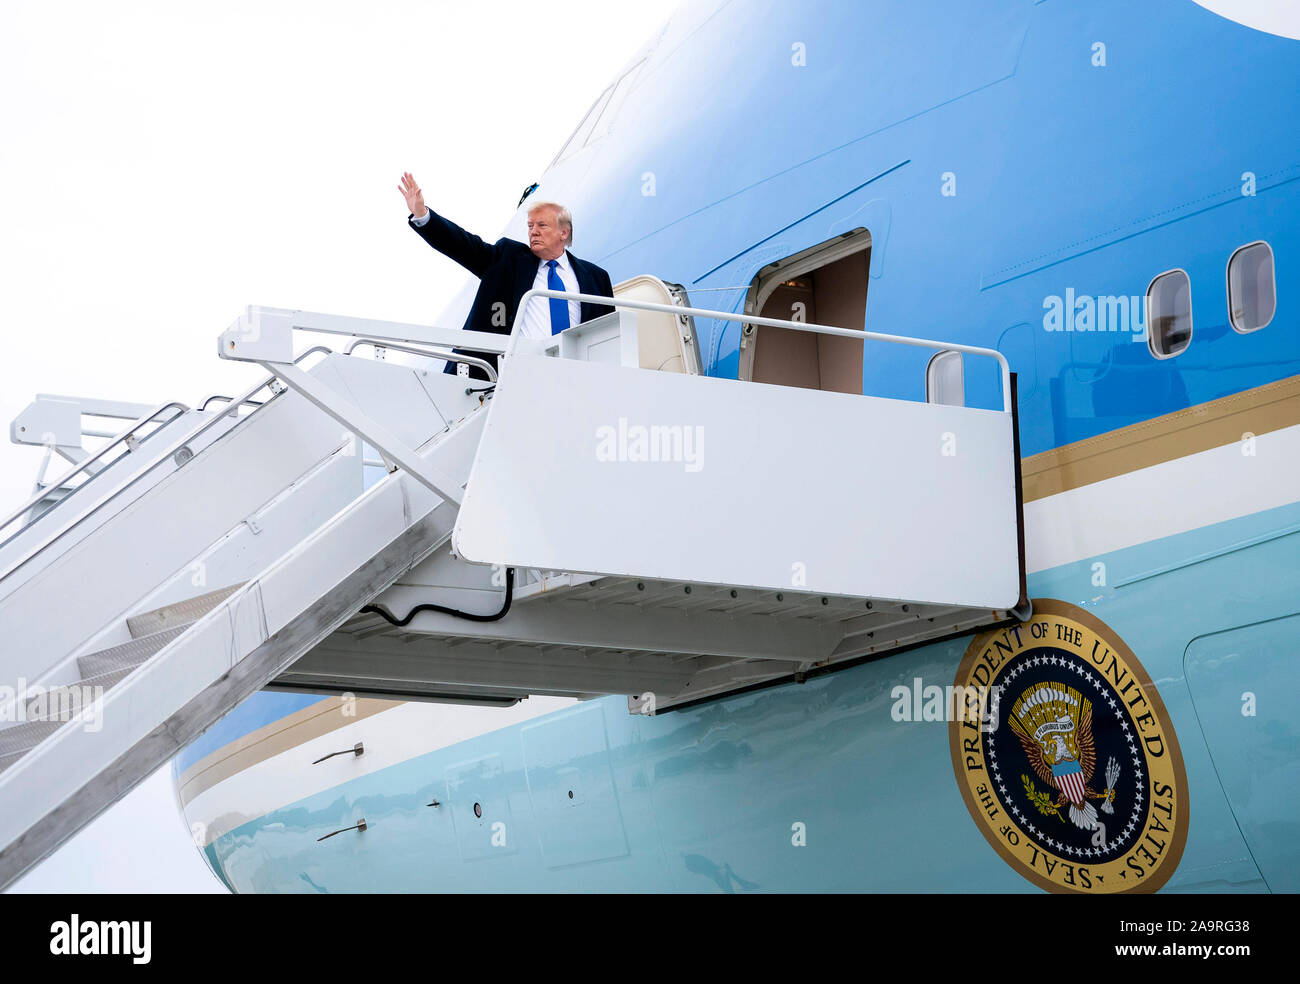 Le président Donald J. Trump vagues comme il monte à l'Air Force One Vendredi, Novembre 8, 2019, à Dobbins Air Reserve Base à Marietta, Géorgie, pour son vol de Joint Base Andrews, Md. Banque D'Images